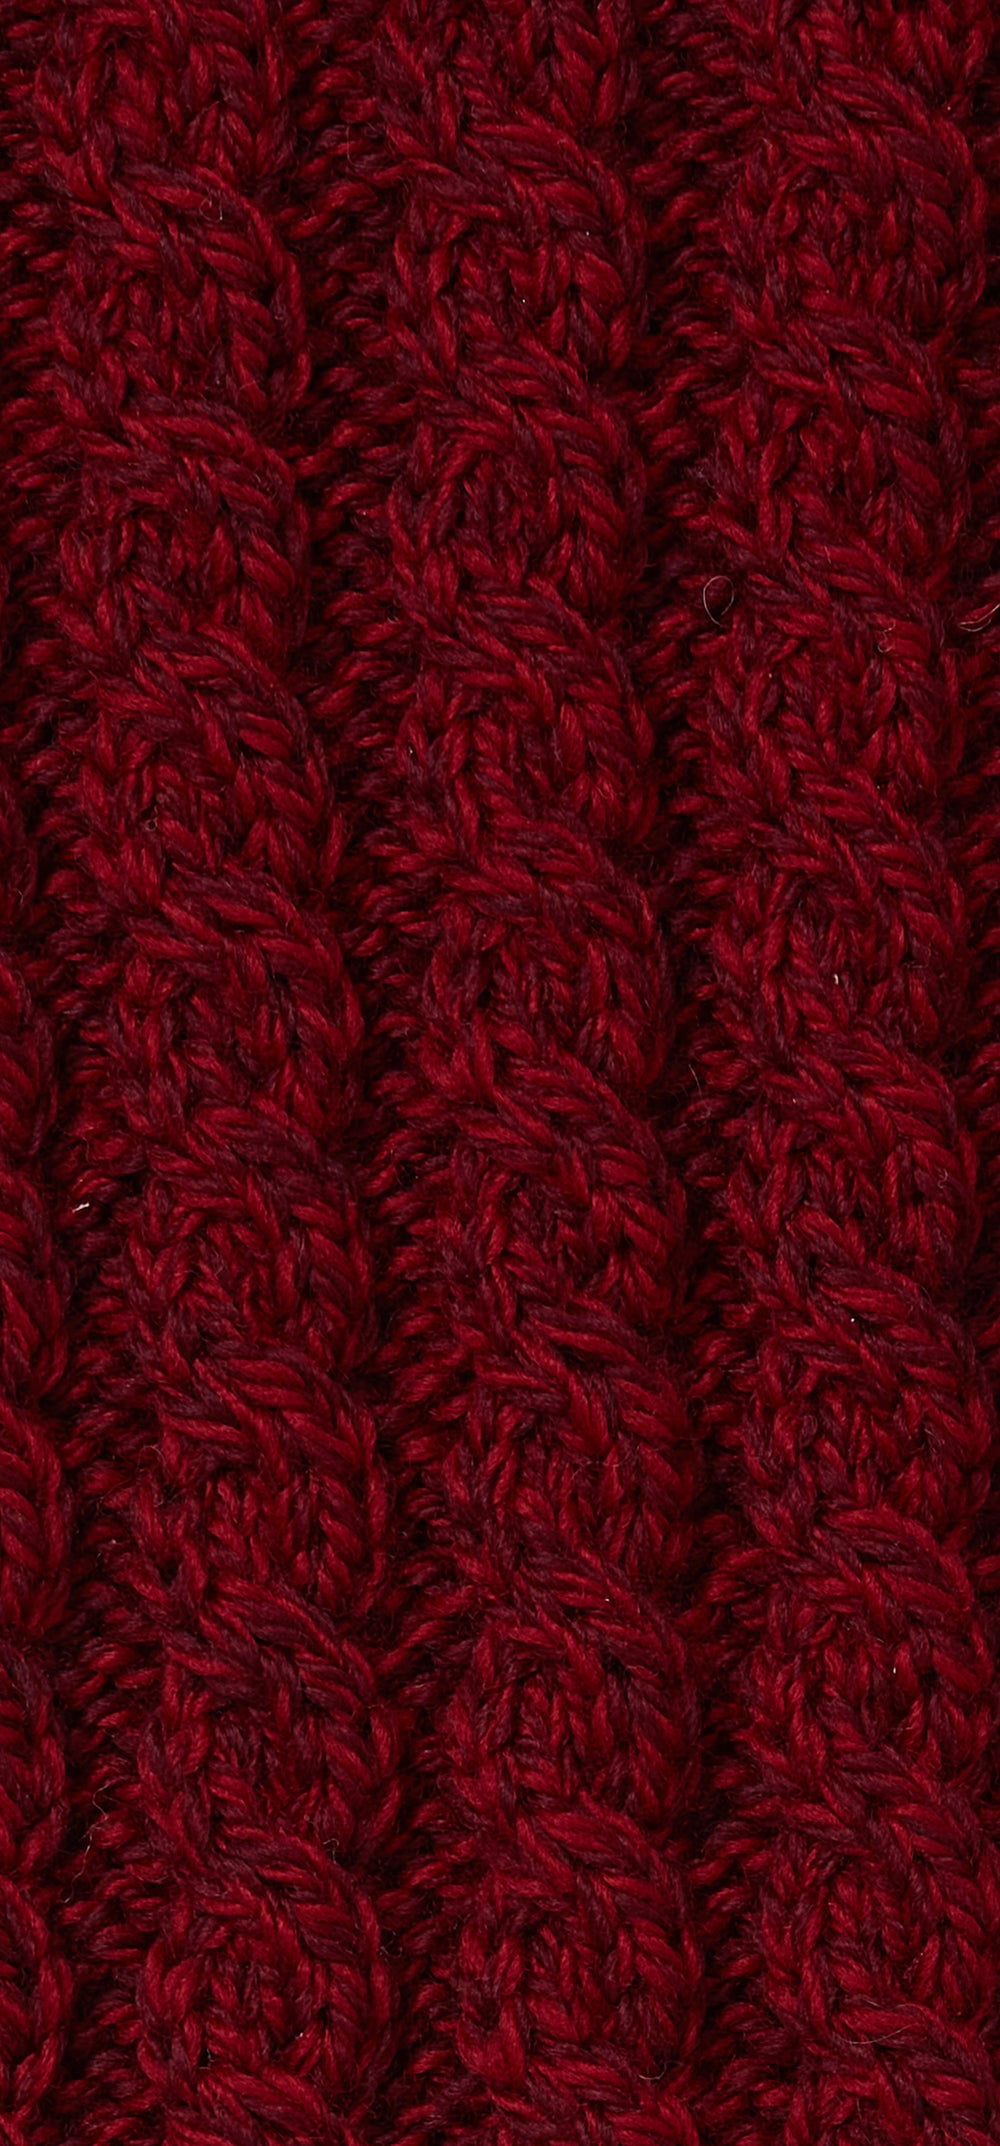 Aran Wool Super Soft Raglan Pullover Sweater Rua Red (B951 959)